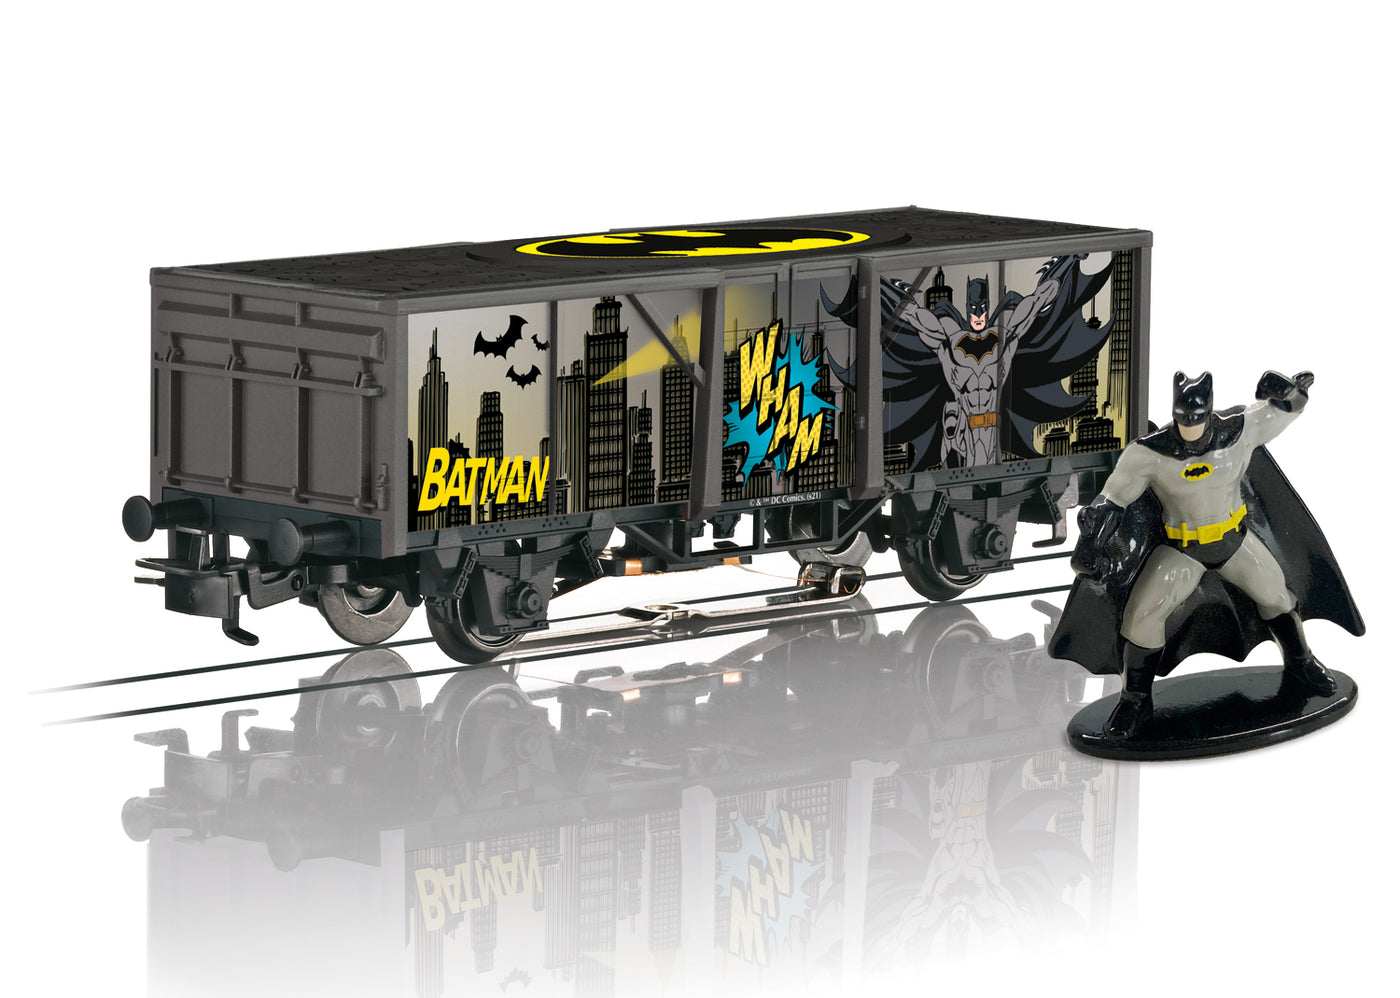 44826 HO Start Up Batman Freight Car